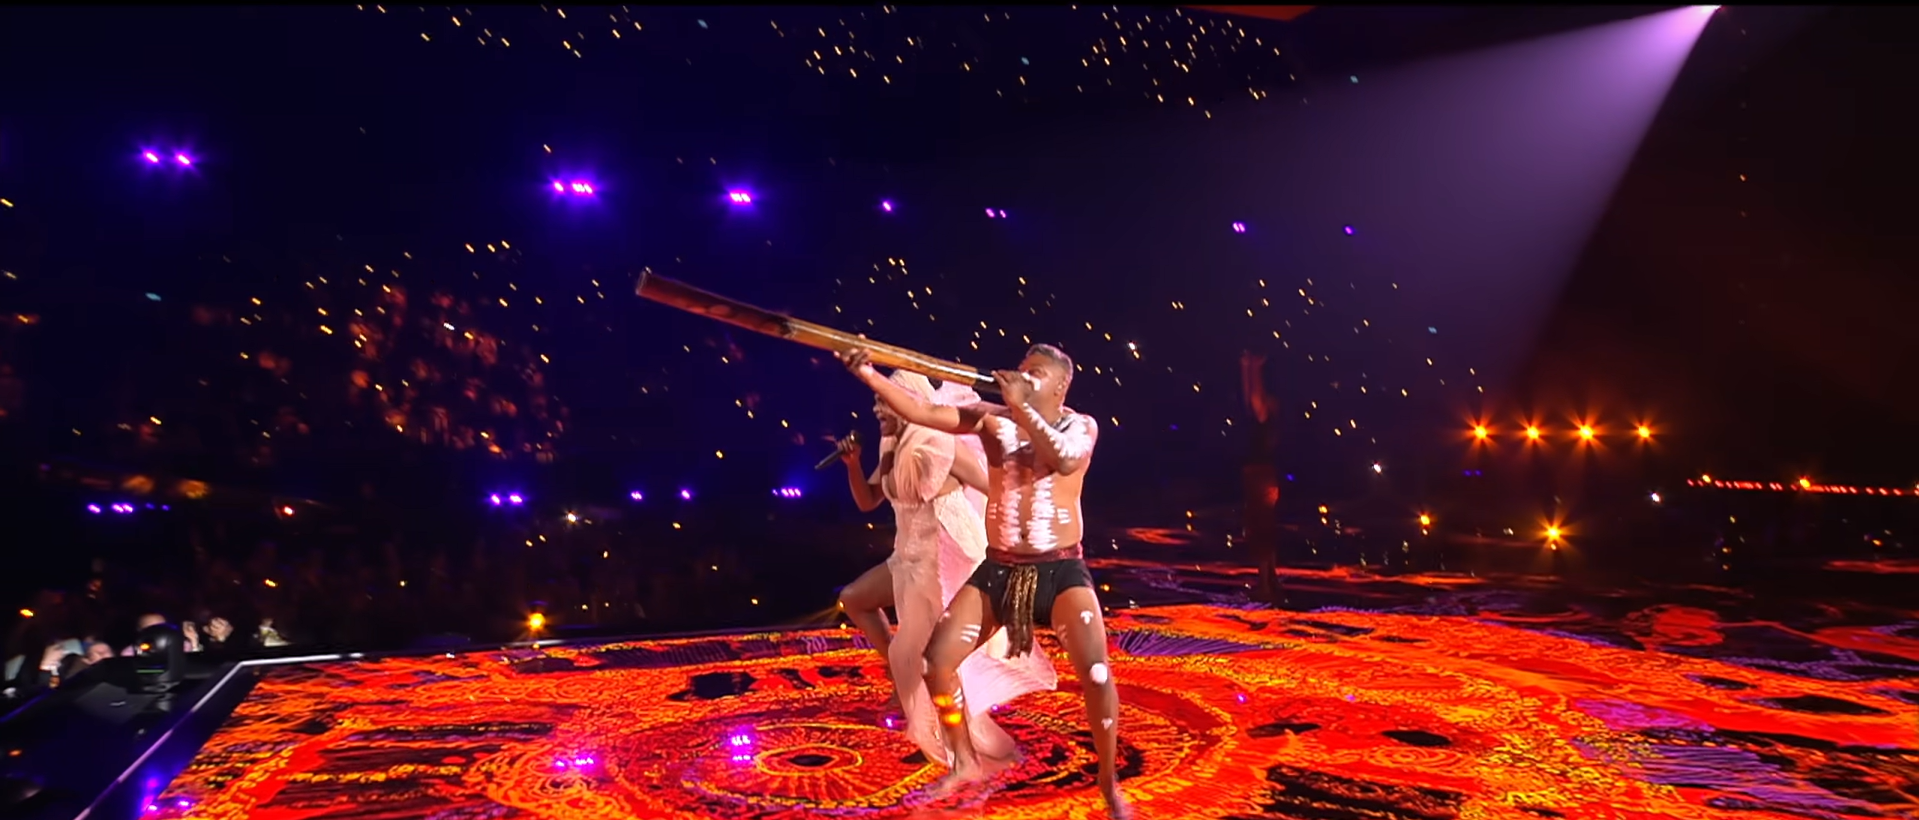 Пісня Австралії увійшла в історію Євробачення: про що One Mikali (One Blood) від Electric Fields, яка не потрапила до фіналу